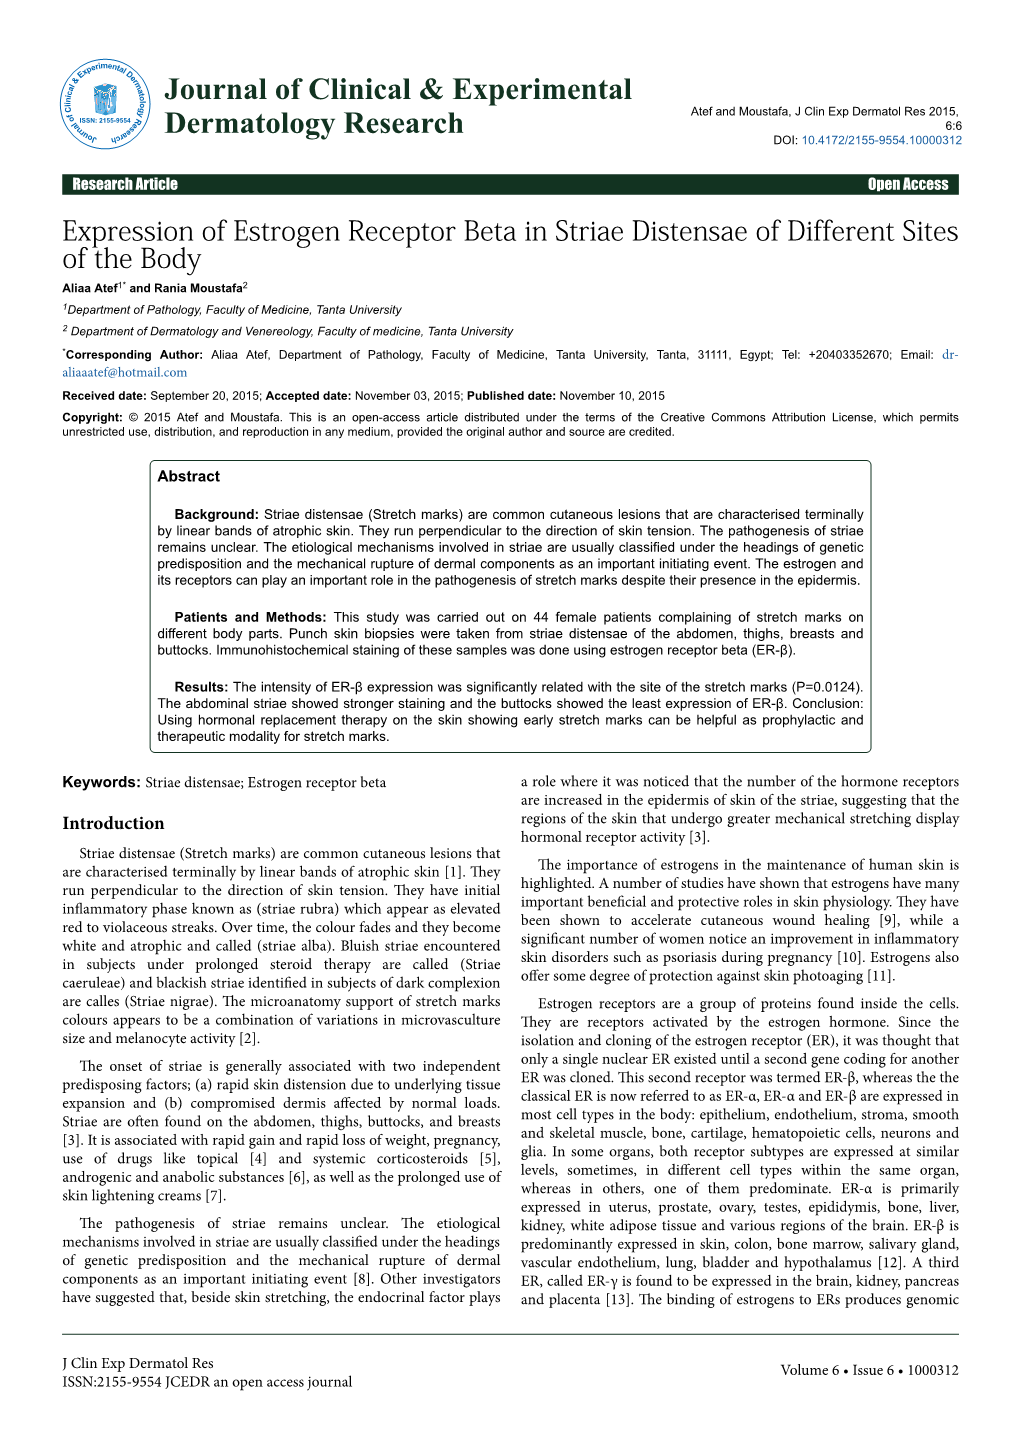 Expression of Estrogen Receptor Beta in Striae Distensae of Different